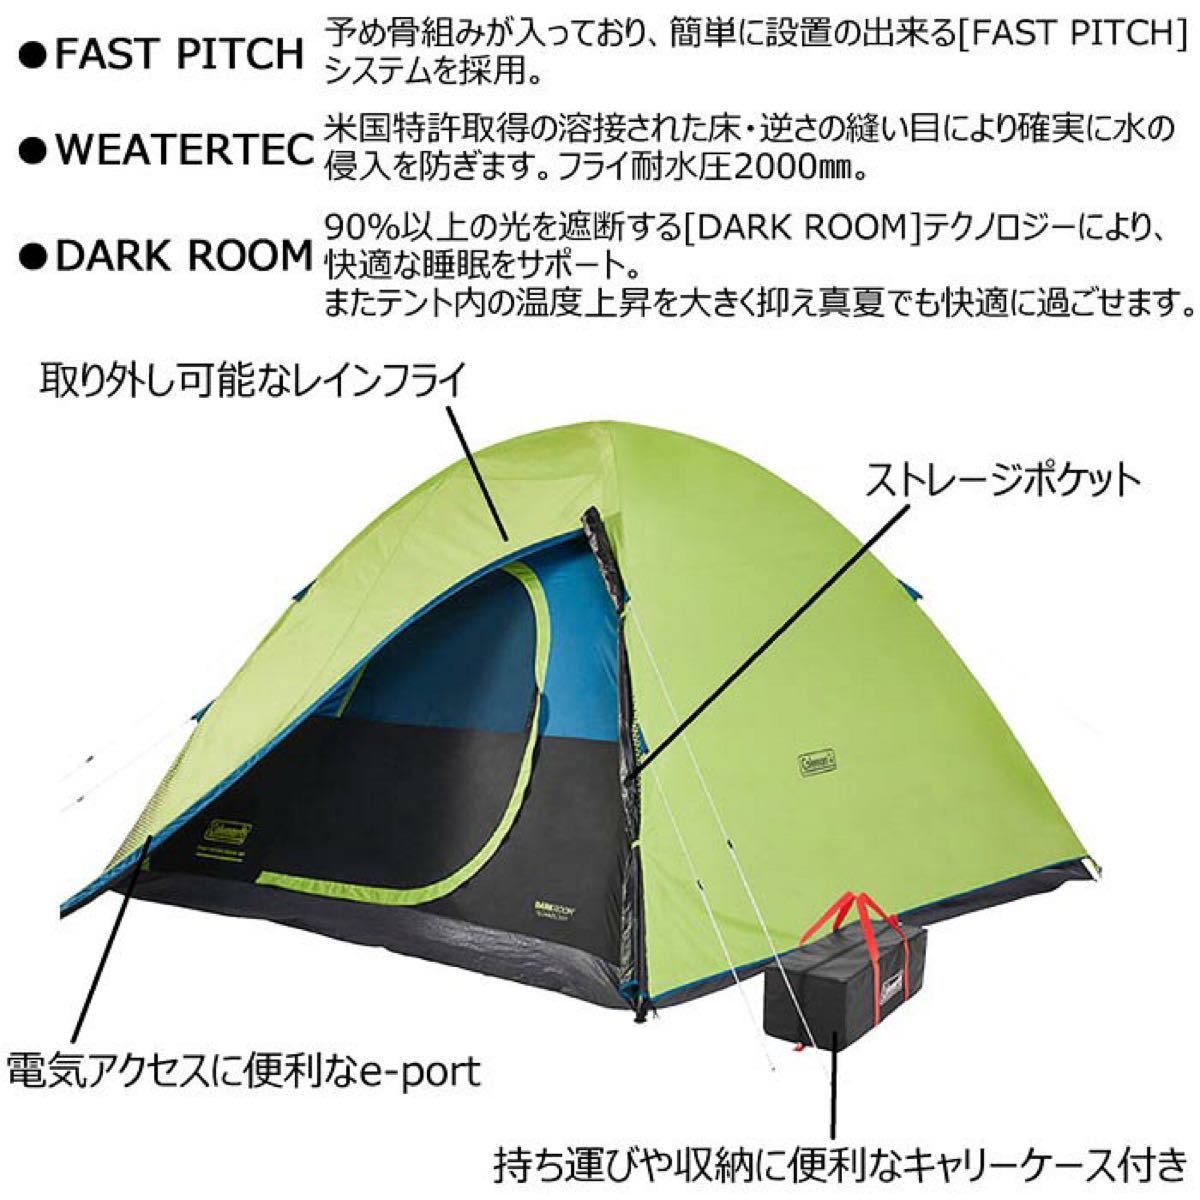 【新品】コールマン テント 6人用 広々 簡単2分設置 COLEMAN